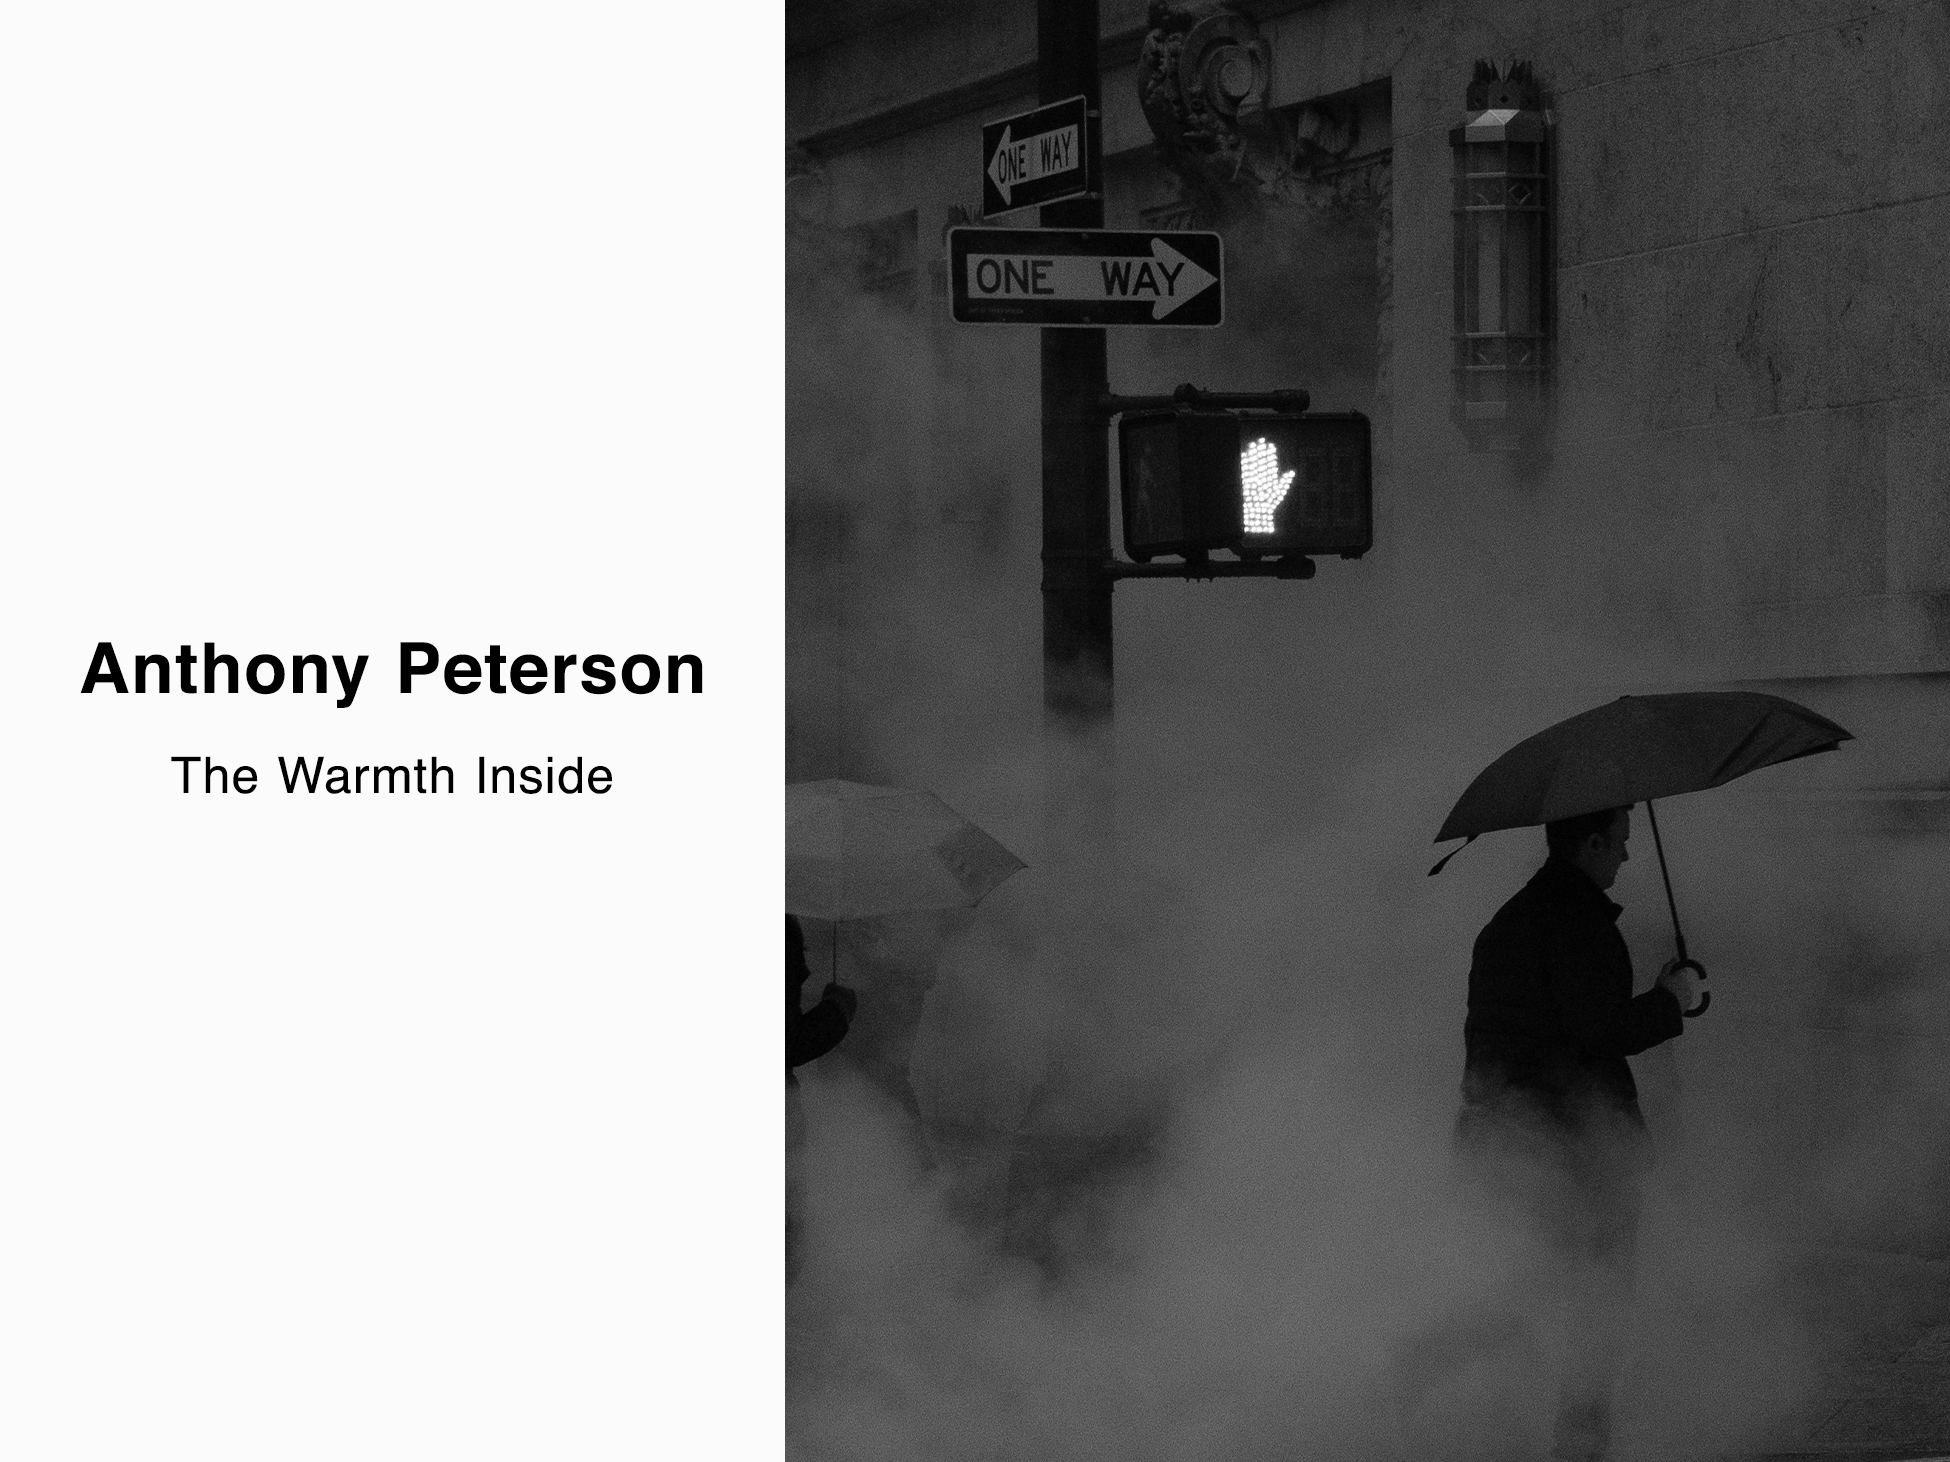 Anthony Peterson Photo Exhibition @ Ron Herman Futakotamagawa 10.21(Sat) - 11.17(Fri)